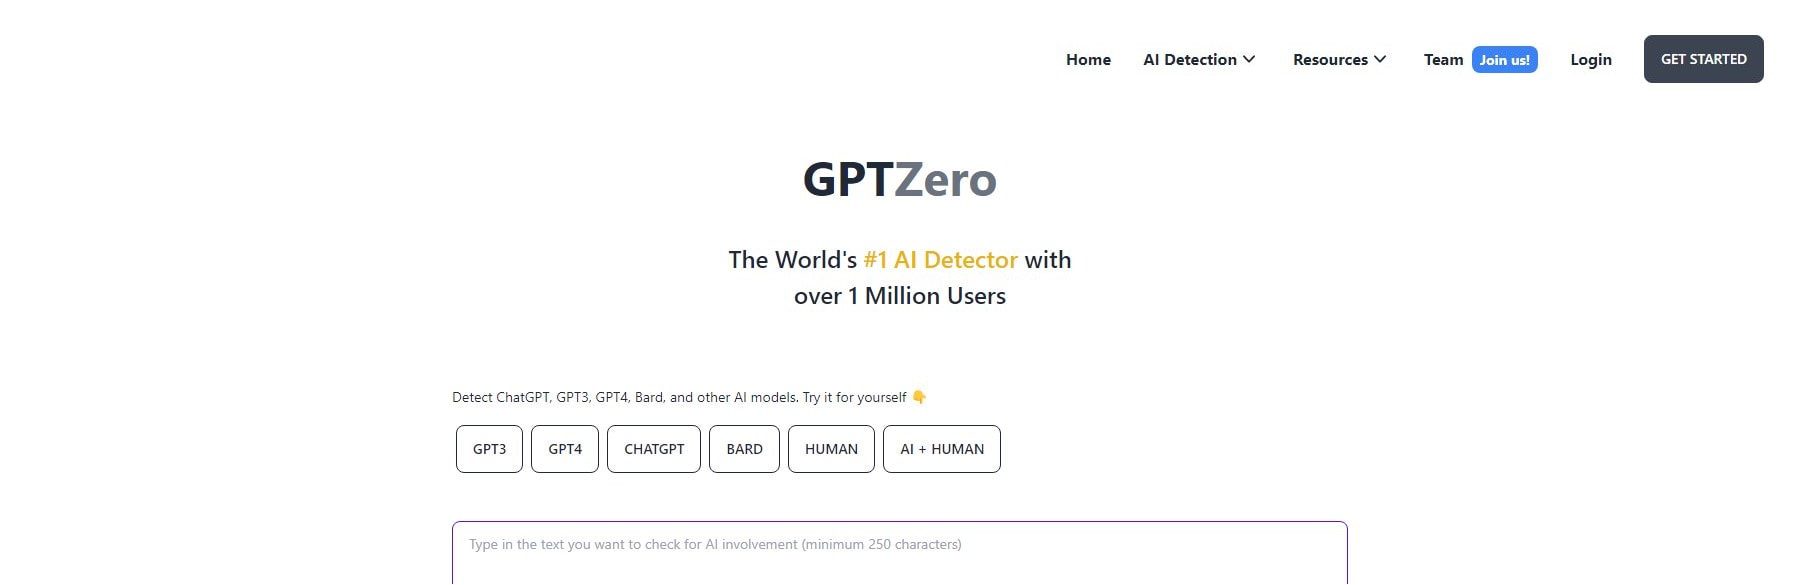 Gptzero - Home page maggio 2023